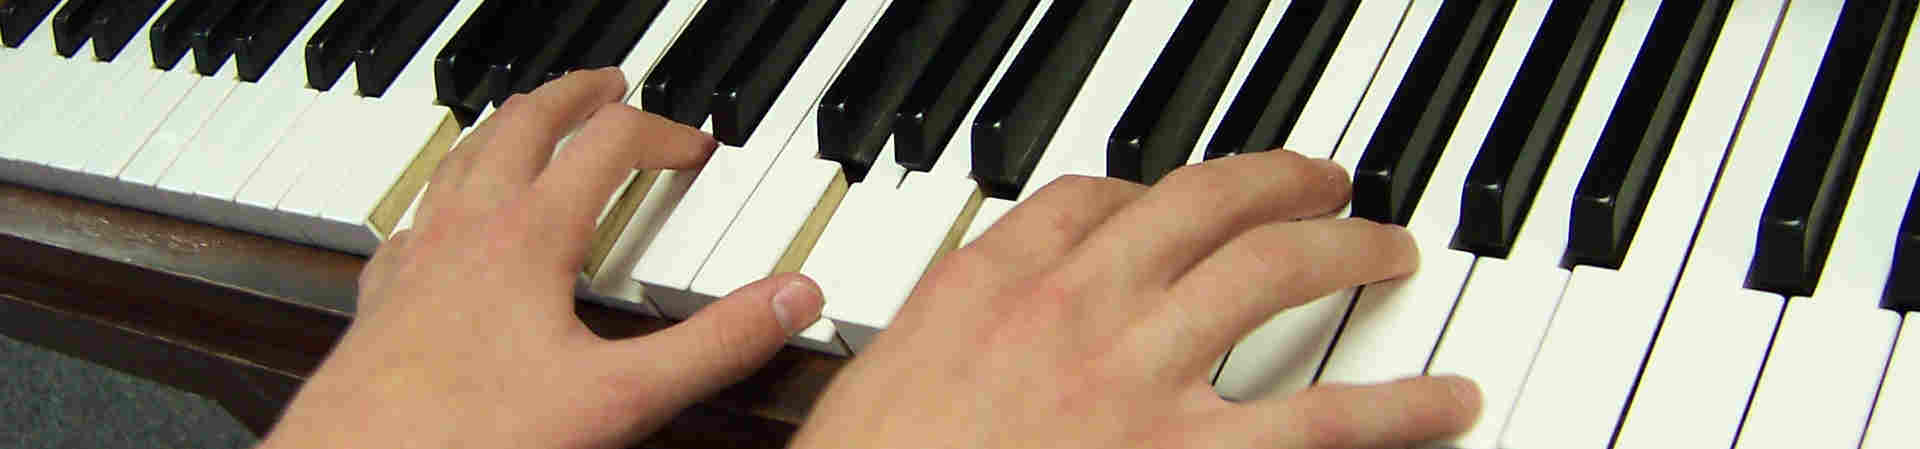 Lezioni di pianoforte online